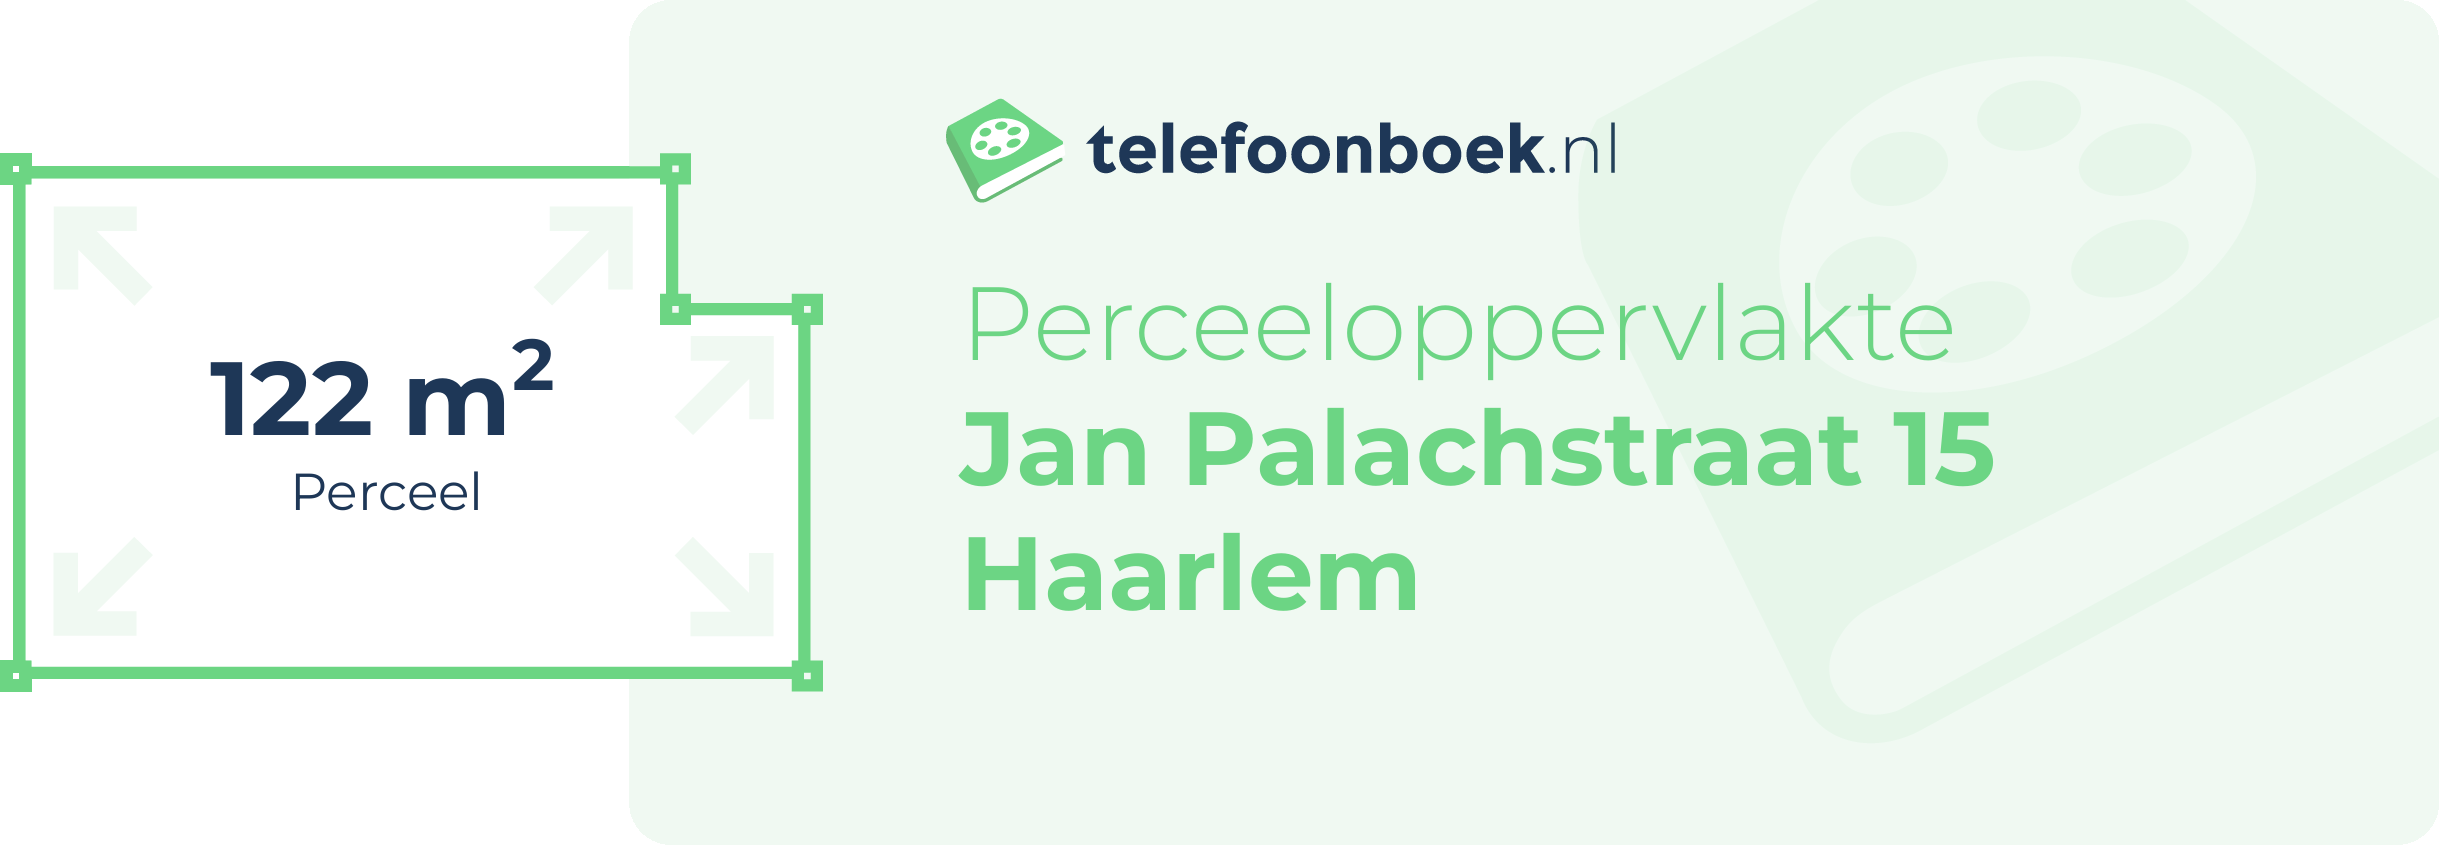 Perceeloppervlakte Jan Palachstraat 15 Haarlem